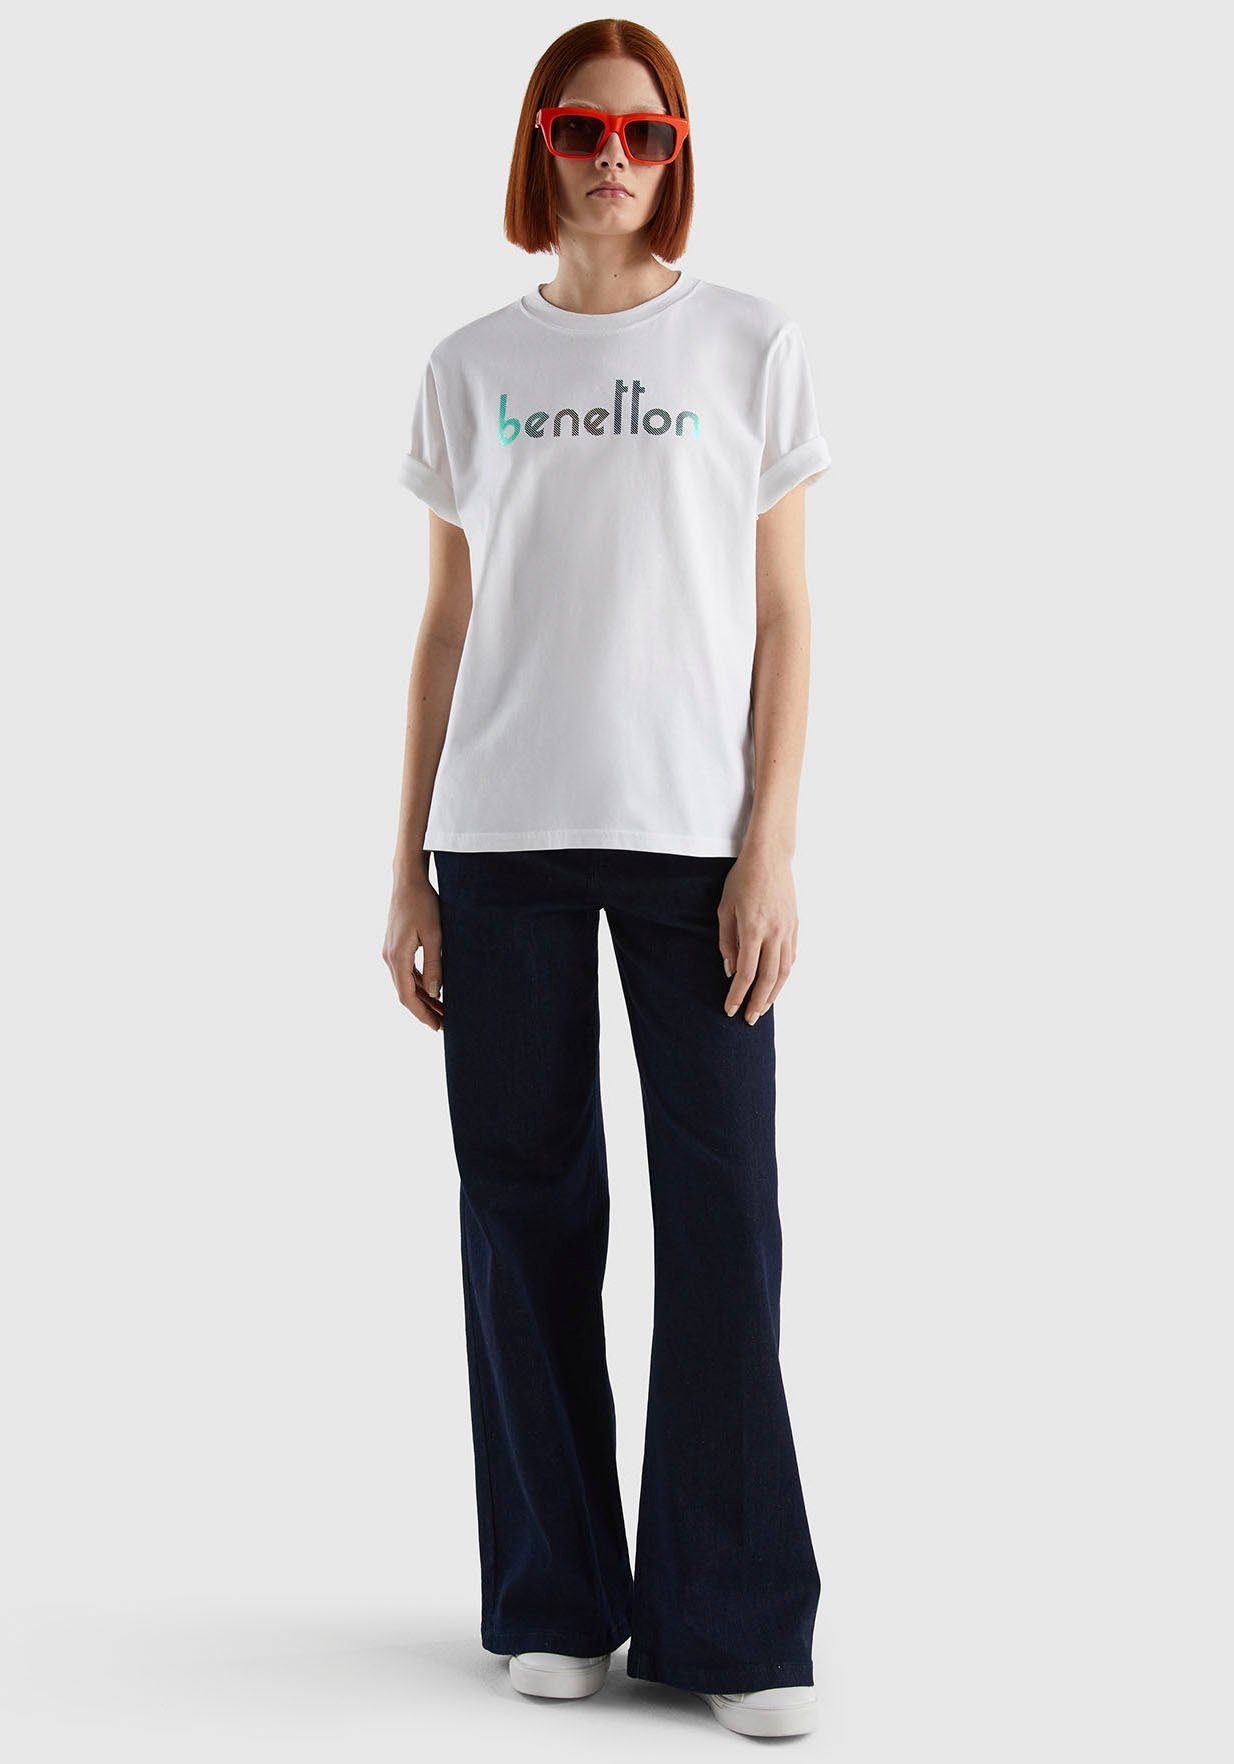 United Colors of T-Shirt Logodruck Benetton auf weiß Brust mit der